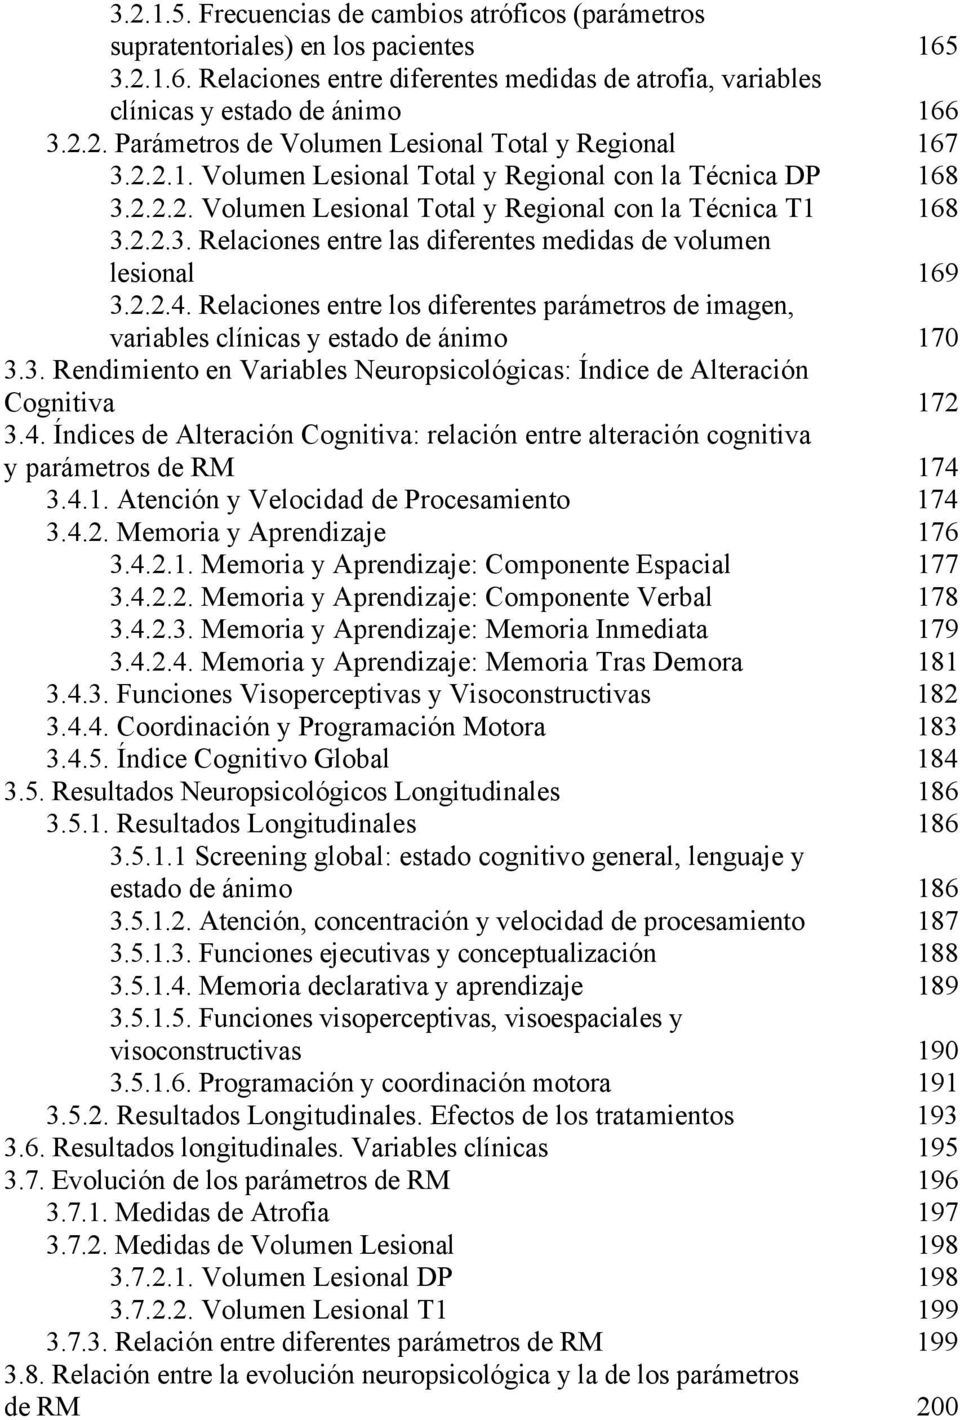 2.2.4. Relaciones entre los diferentes parámetros de imagen, variables clínicas y estado de ánimo 170 3.3. Rendimiento en Variables Neuropsicológicas: Índice de Alteración Cognitiva 172 3.4. Índices de Alteración Cognitiva: relación entre alteración cognitiva y parámetros de RM 174 3.